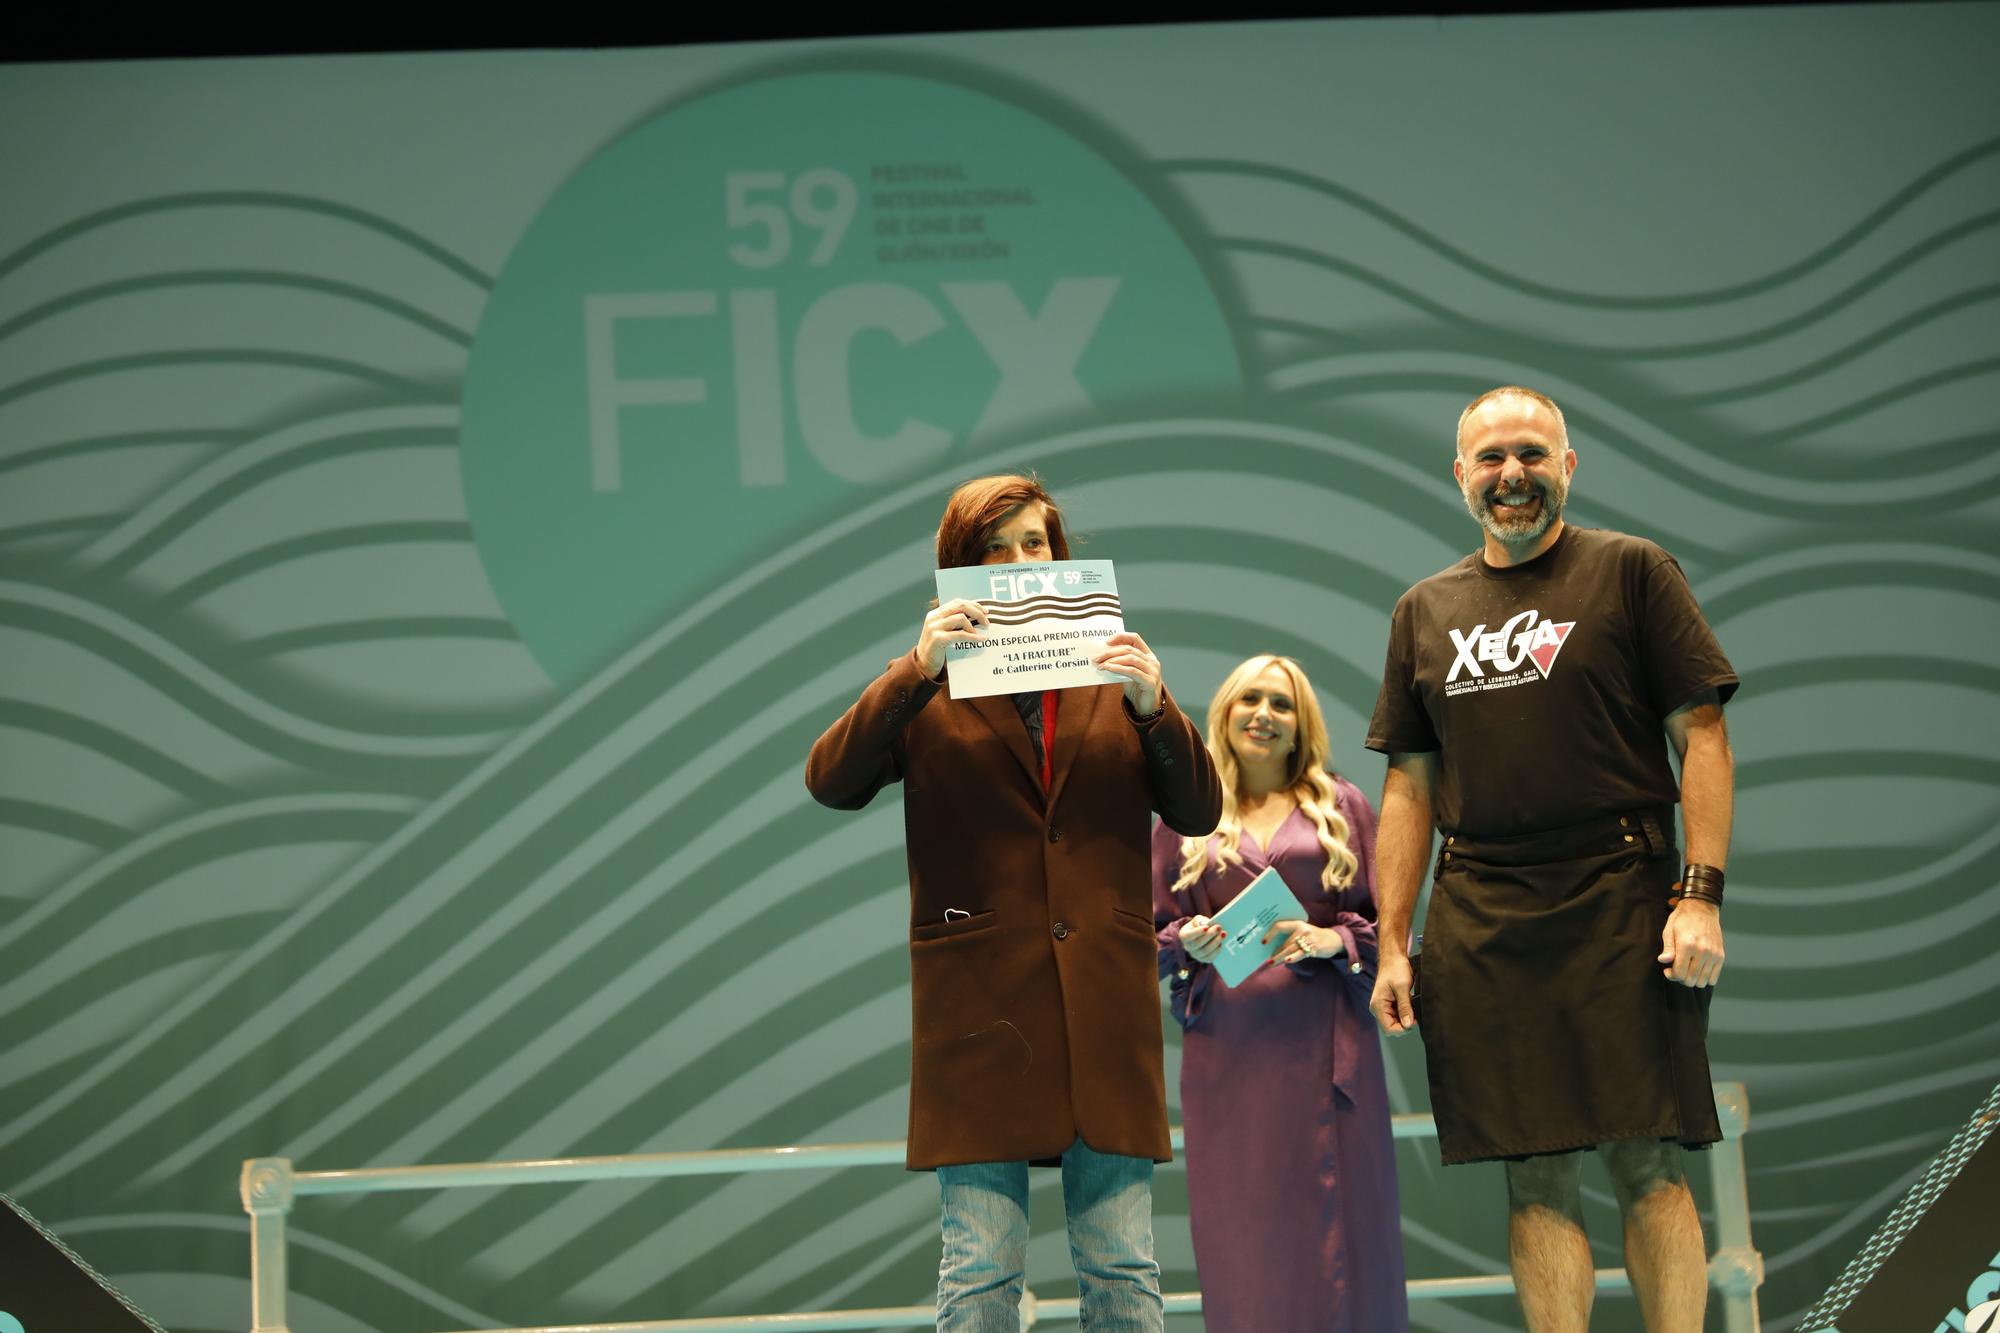 Galería: la entrega de premios del FICX, en imágenes